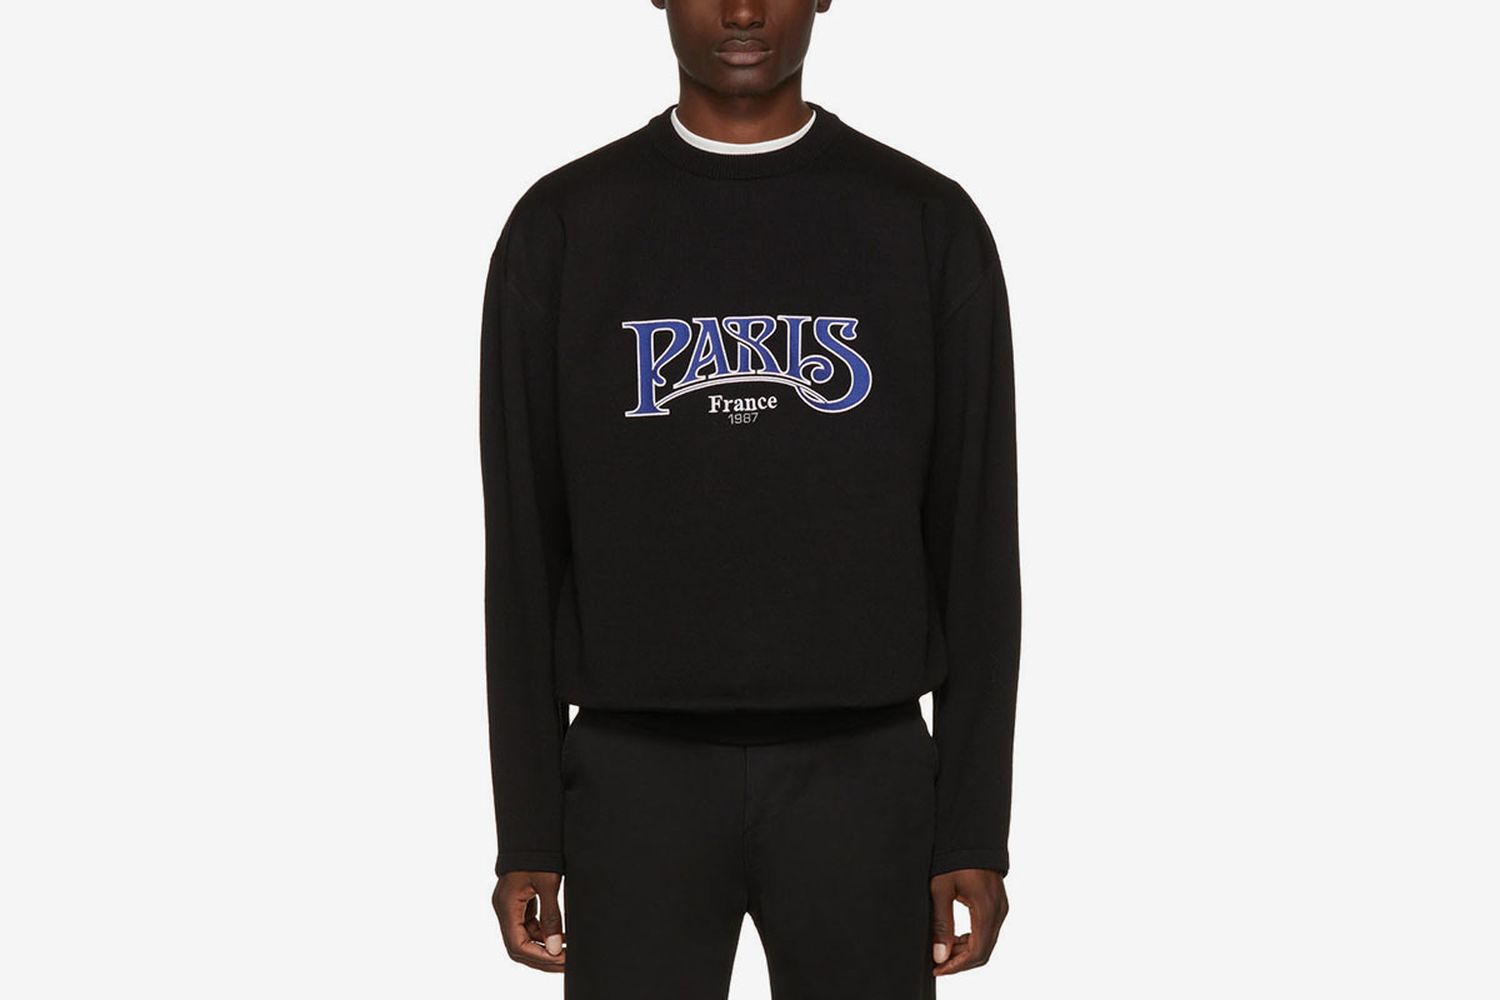 Paris Sweater